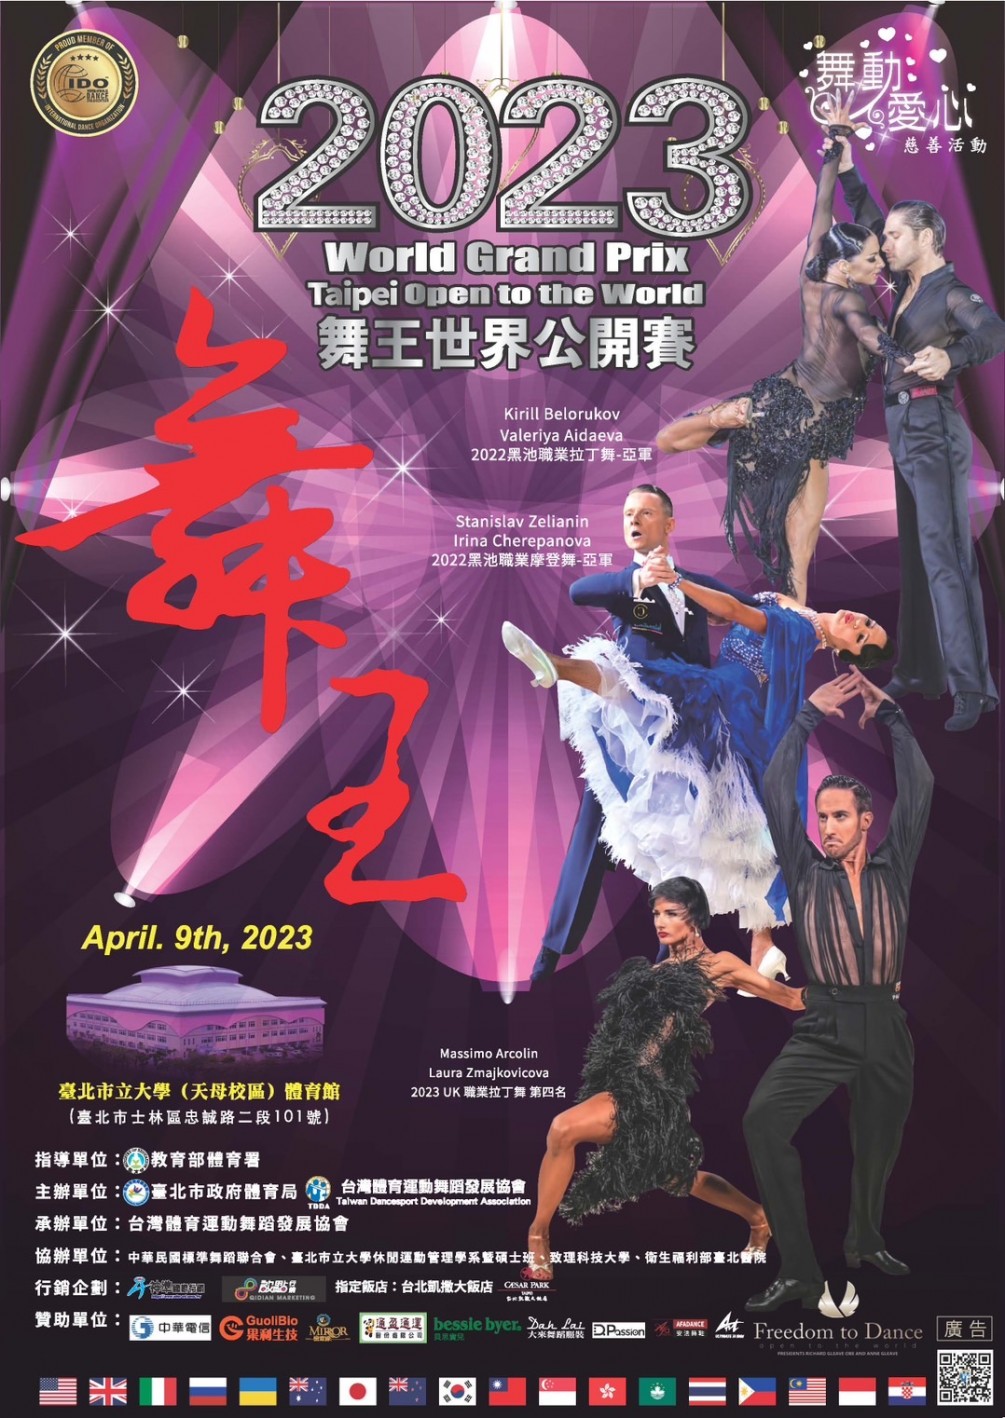 2023舞王世界公開賽 2023 IDO World Grand Prix Taipei Open To The World 免費門票兌換通知 !!